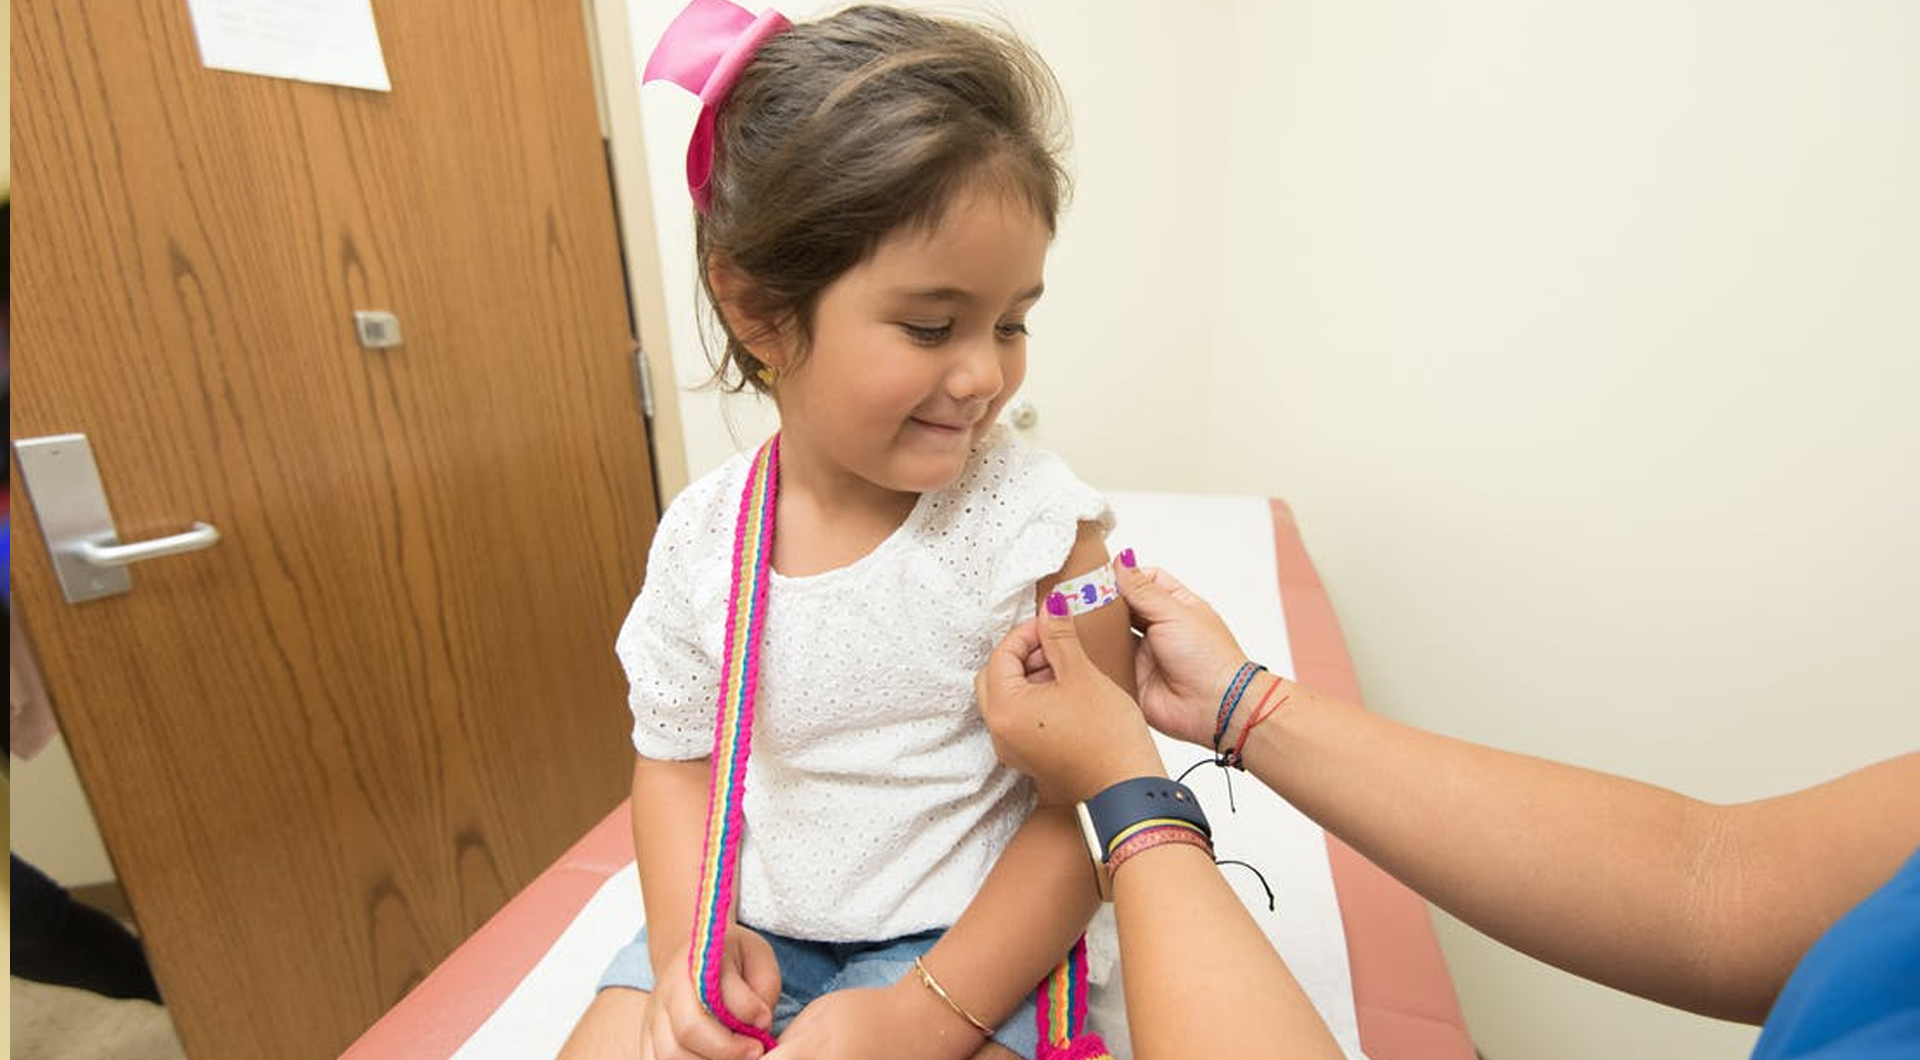 L’assurdità di vaccinare i bambini con un cd vaccino COVID -19 è stata recentemente confermata.